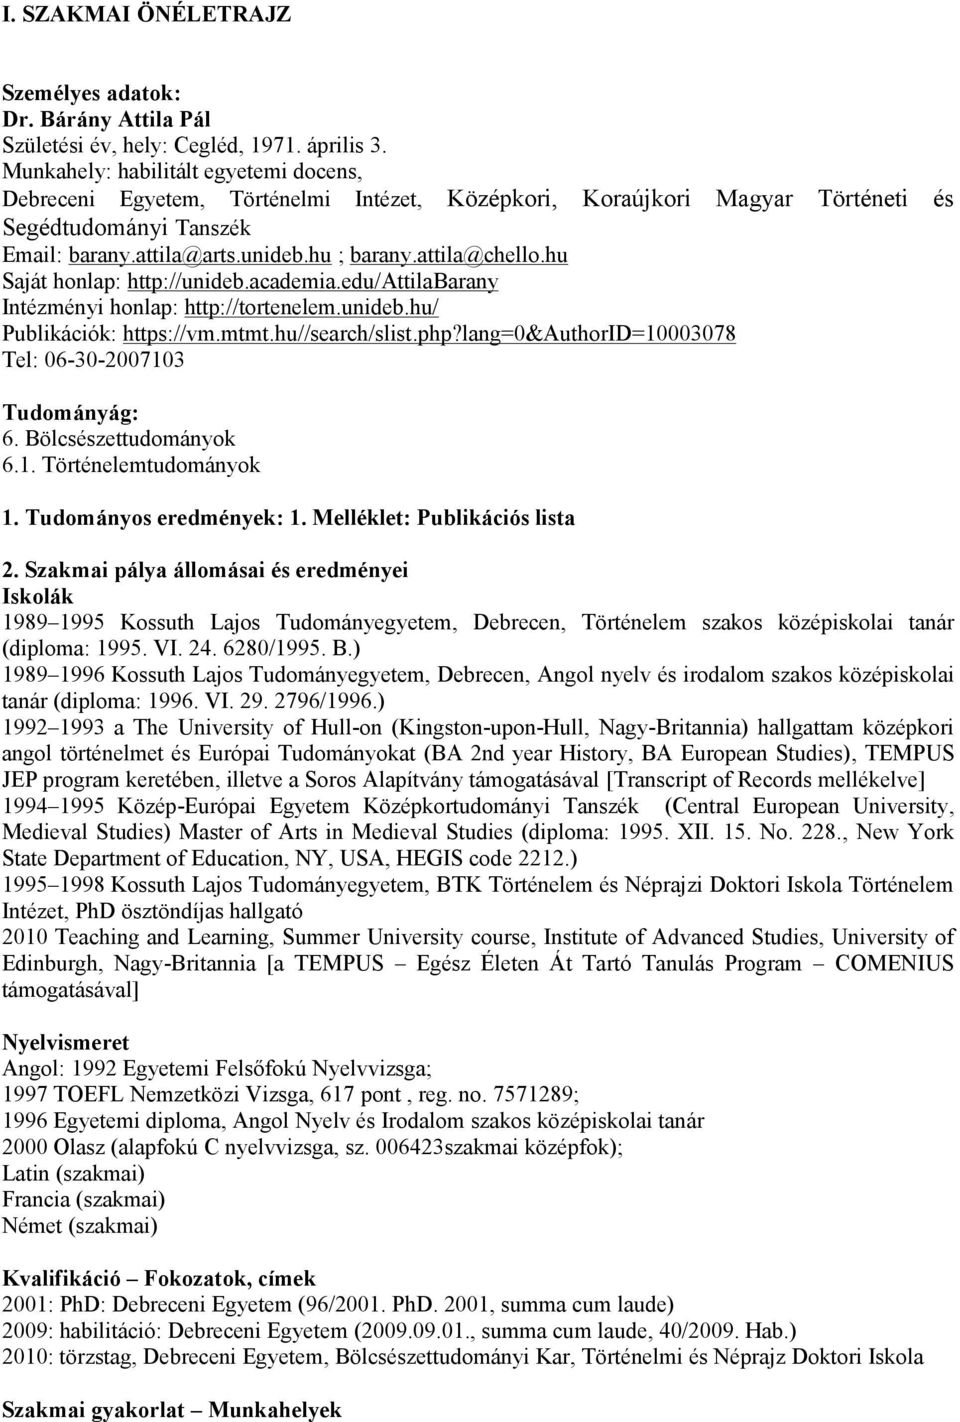 I. SZAKMAI ÖNÉLETRAJZ - PDF Free Download